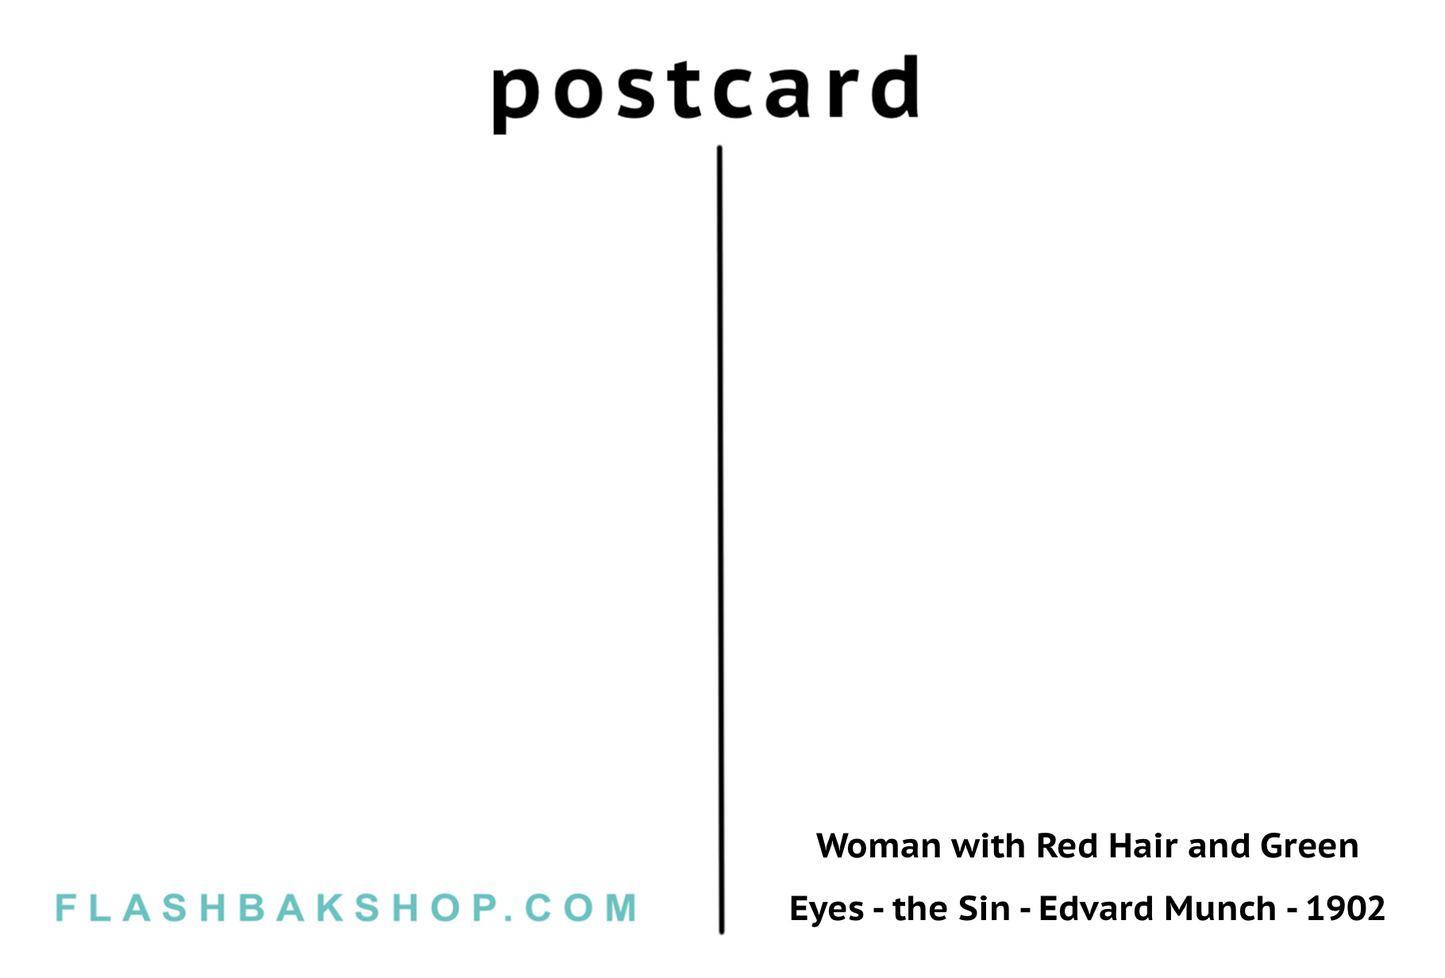 Le péché d'Edvard Munch, 1902 - Carte postale